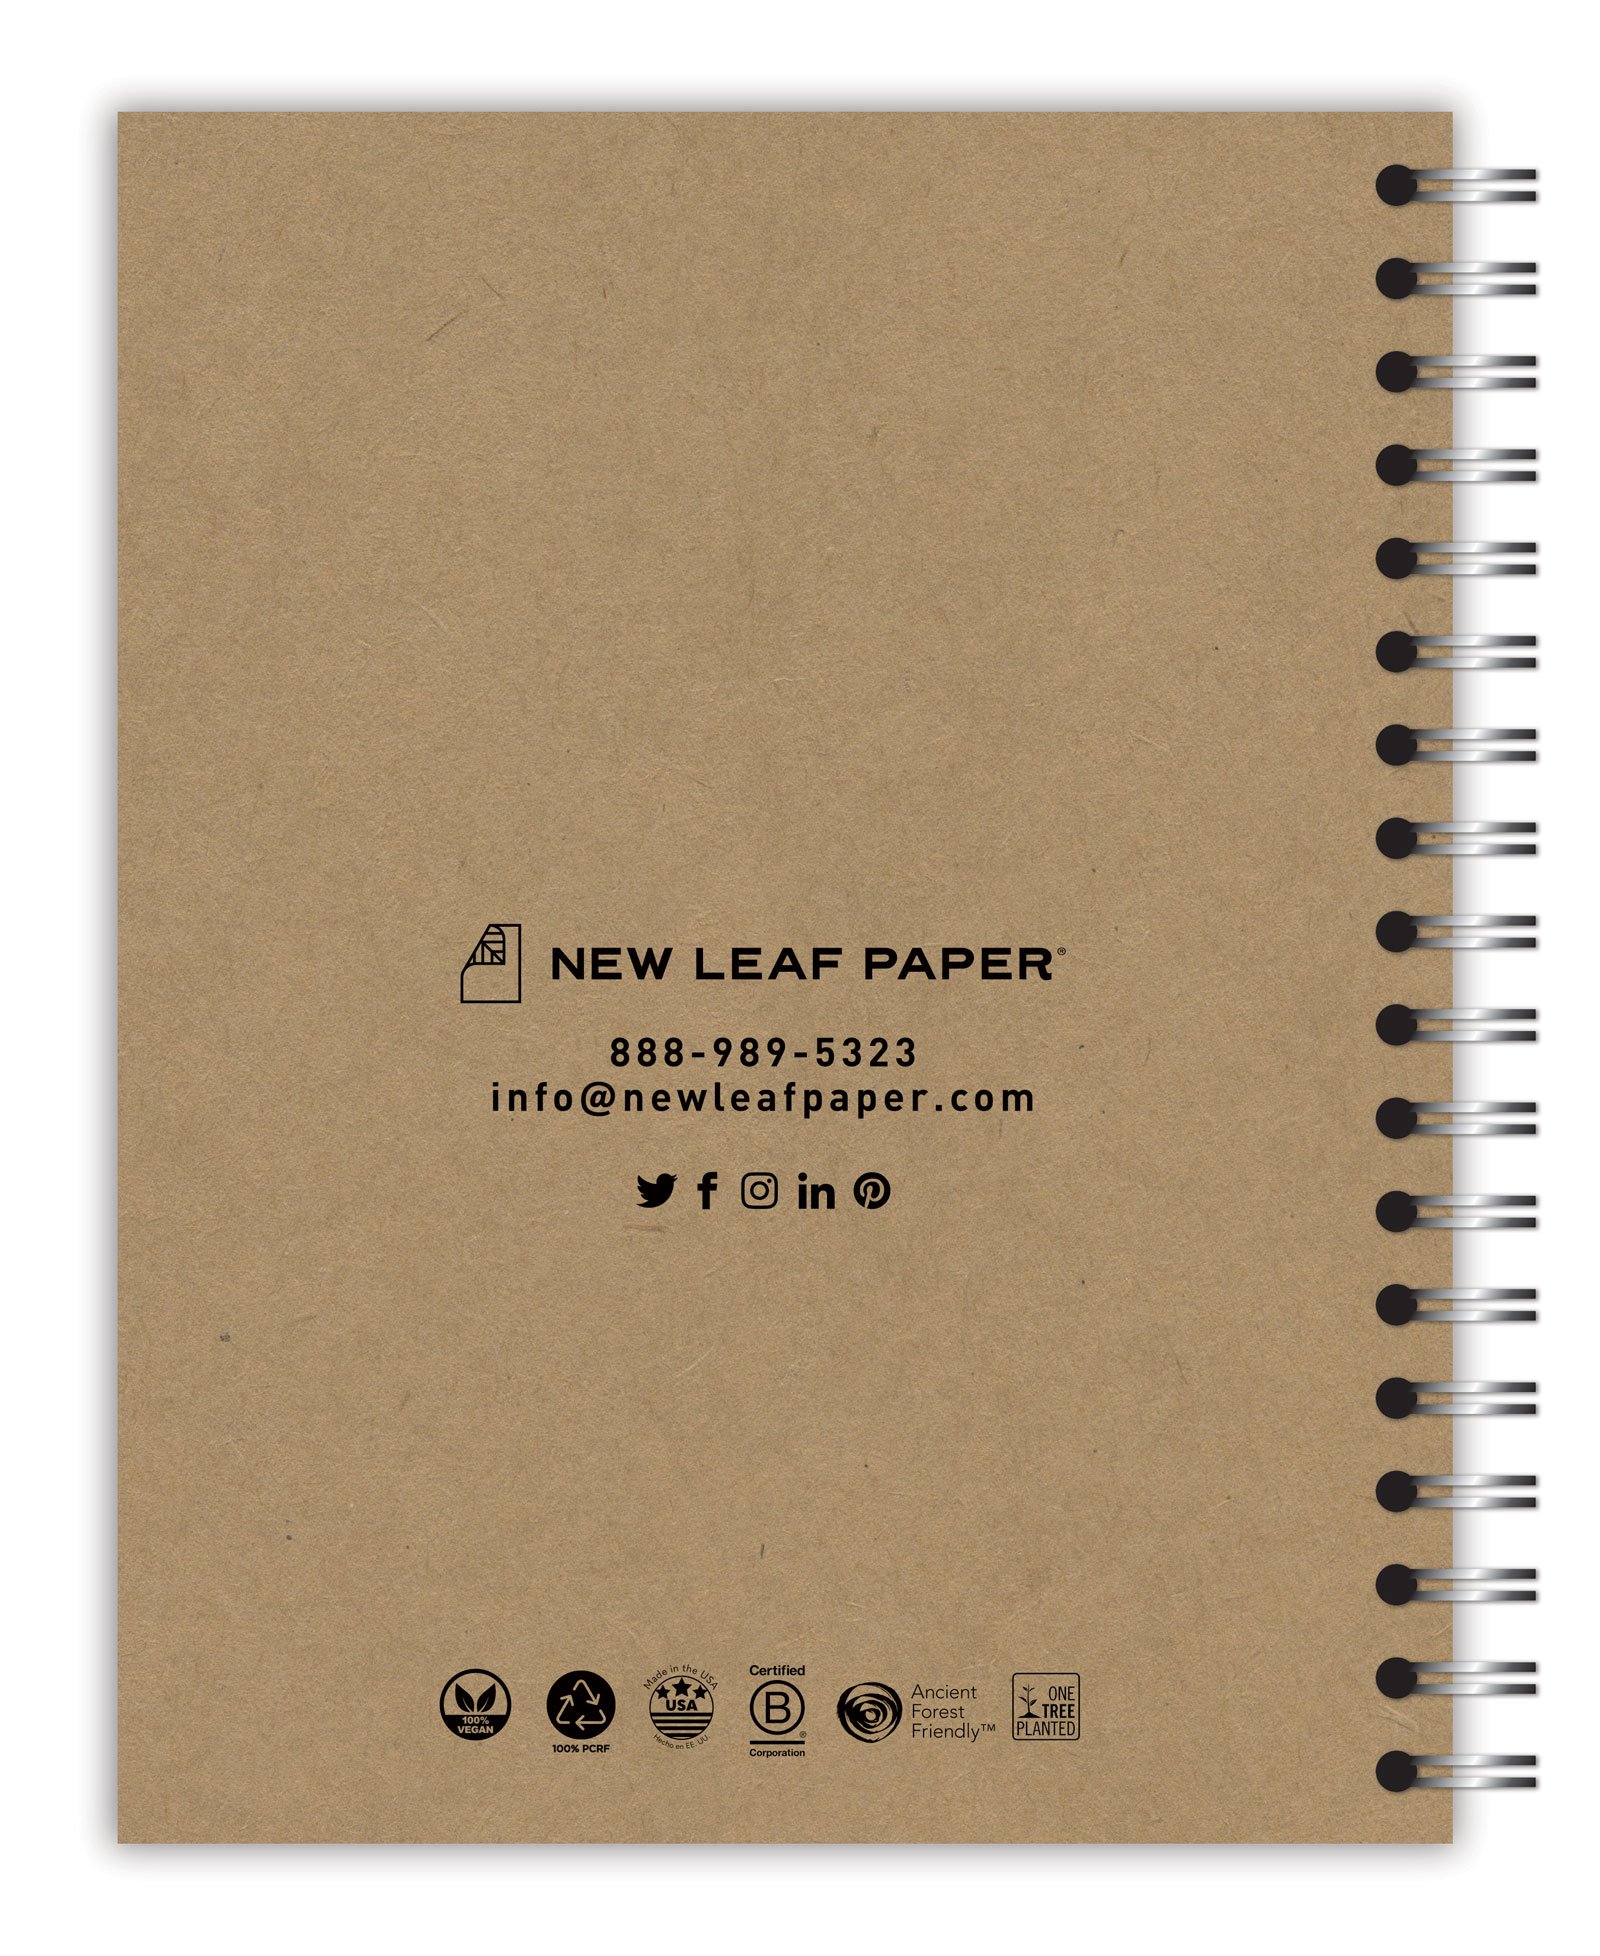 New Leaf Paper Designer Notebooks